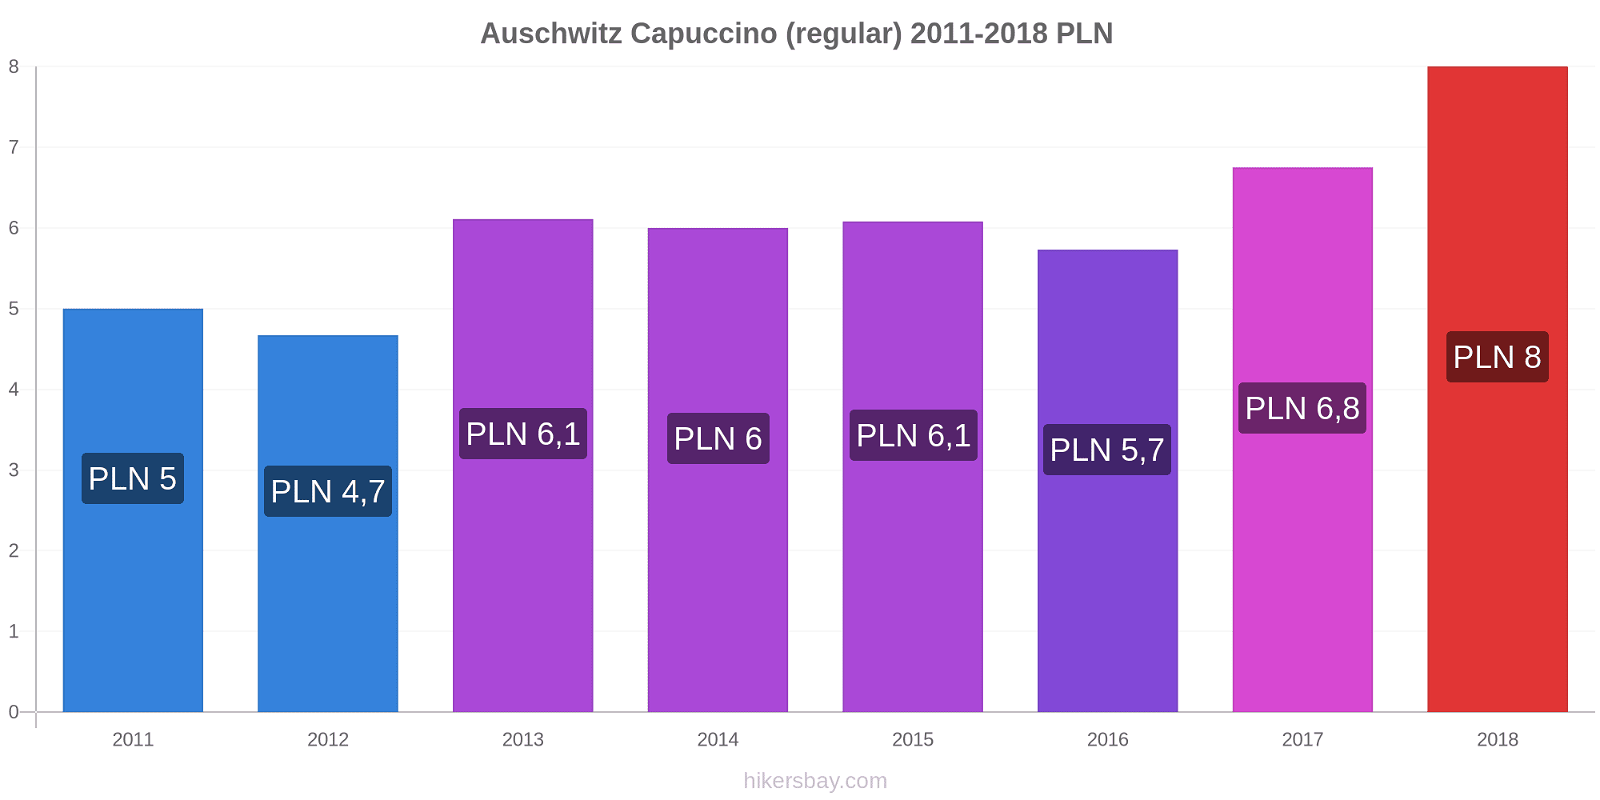 Auschwitz variação de preço Capuccino (regular) hikersbay.com